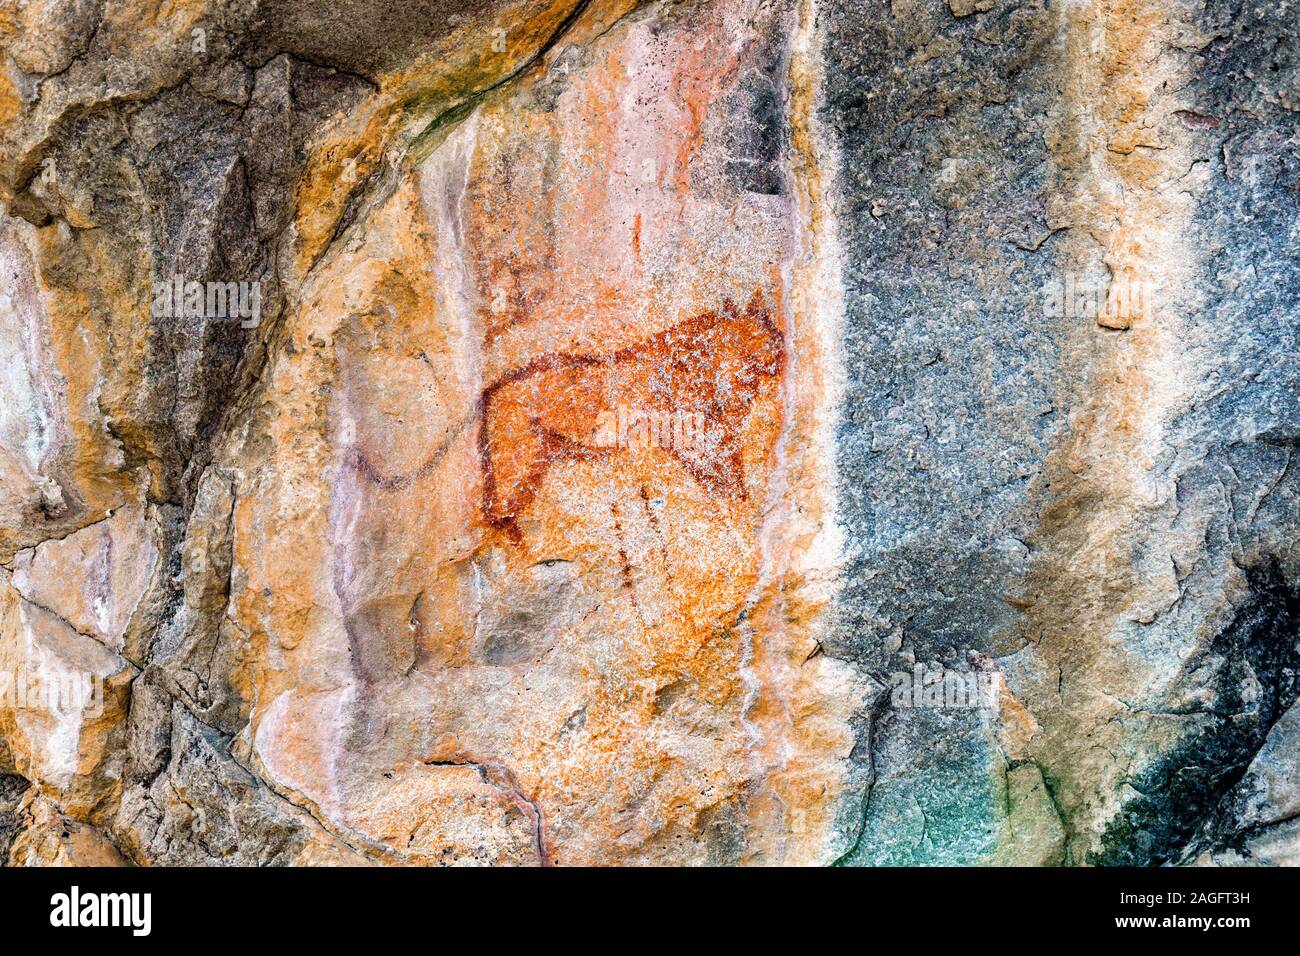 Colline di Tsodilo, pitture rupestri di leone, Louvre del deserto, colline isolate nel deserto di kalahari, Botswana, Africa Meridionale, Africa Foto Stock